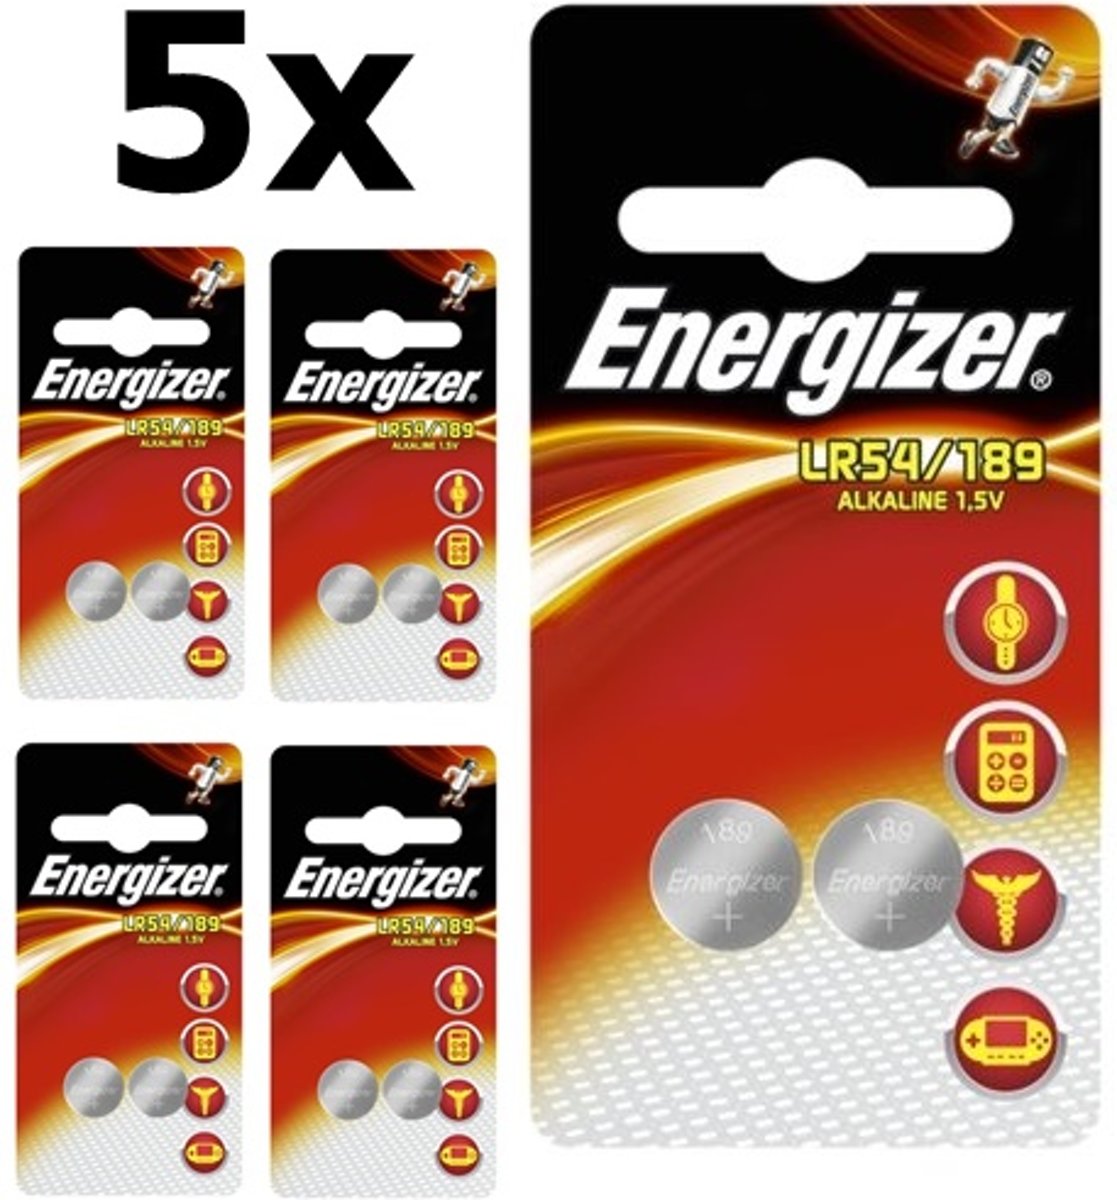 10 Stuks (5 Blister a 2st) Energizer G10 / LR54 / 189 / AG10 1.5V Alkaline knoopcel batterij